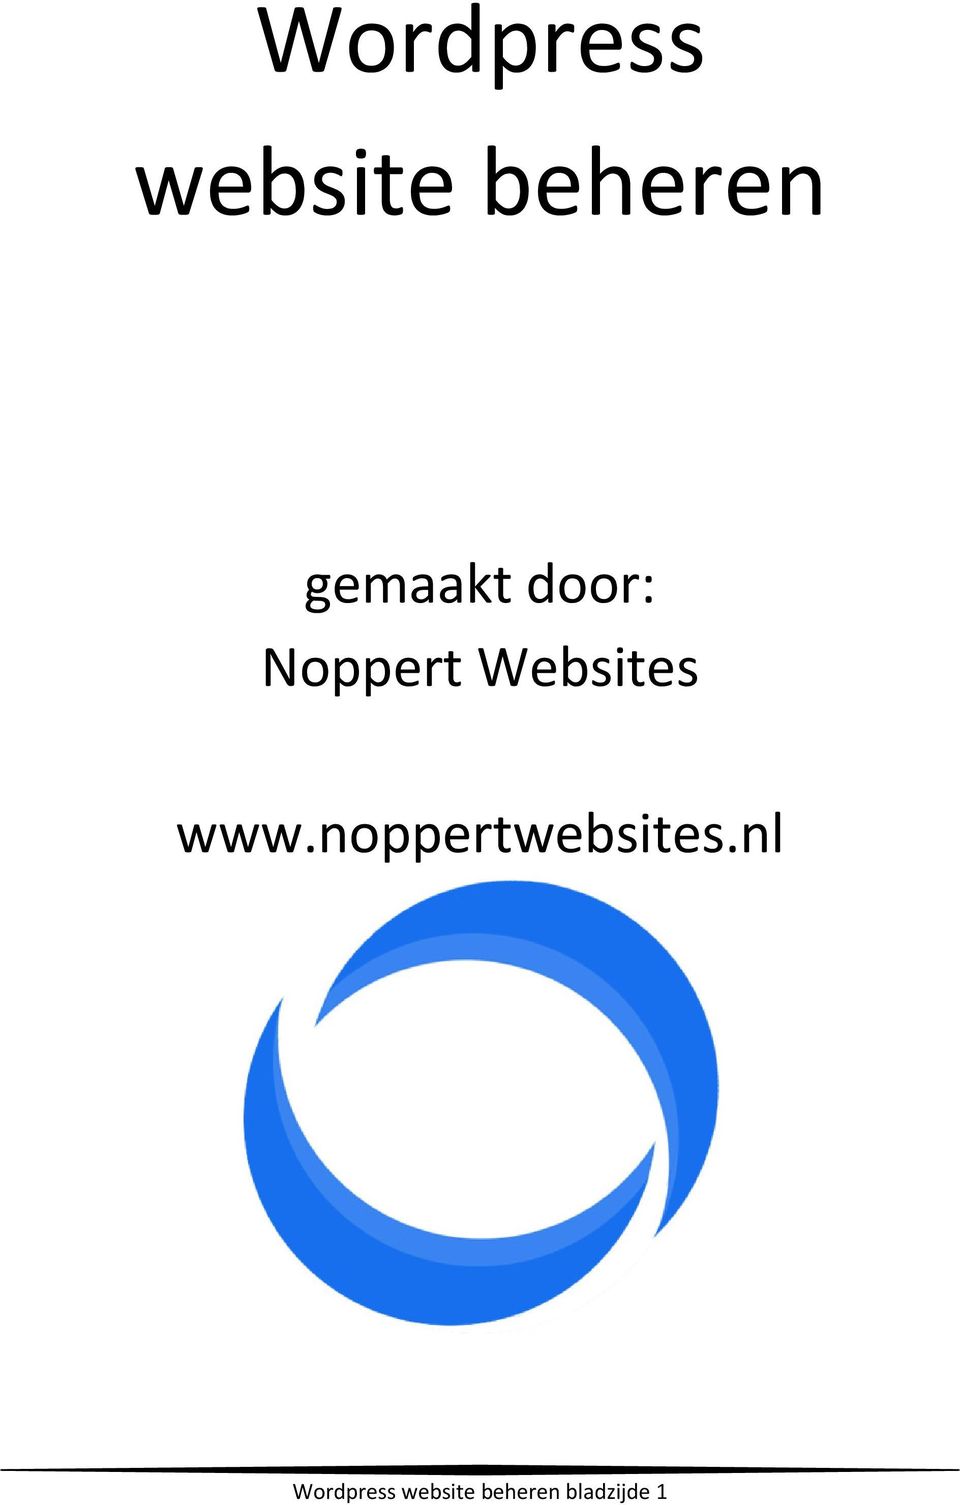 Websites www.noppertwebsites.